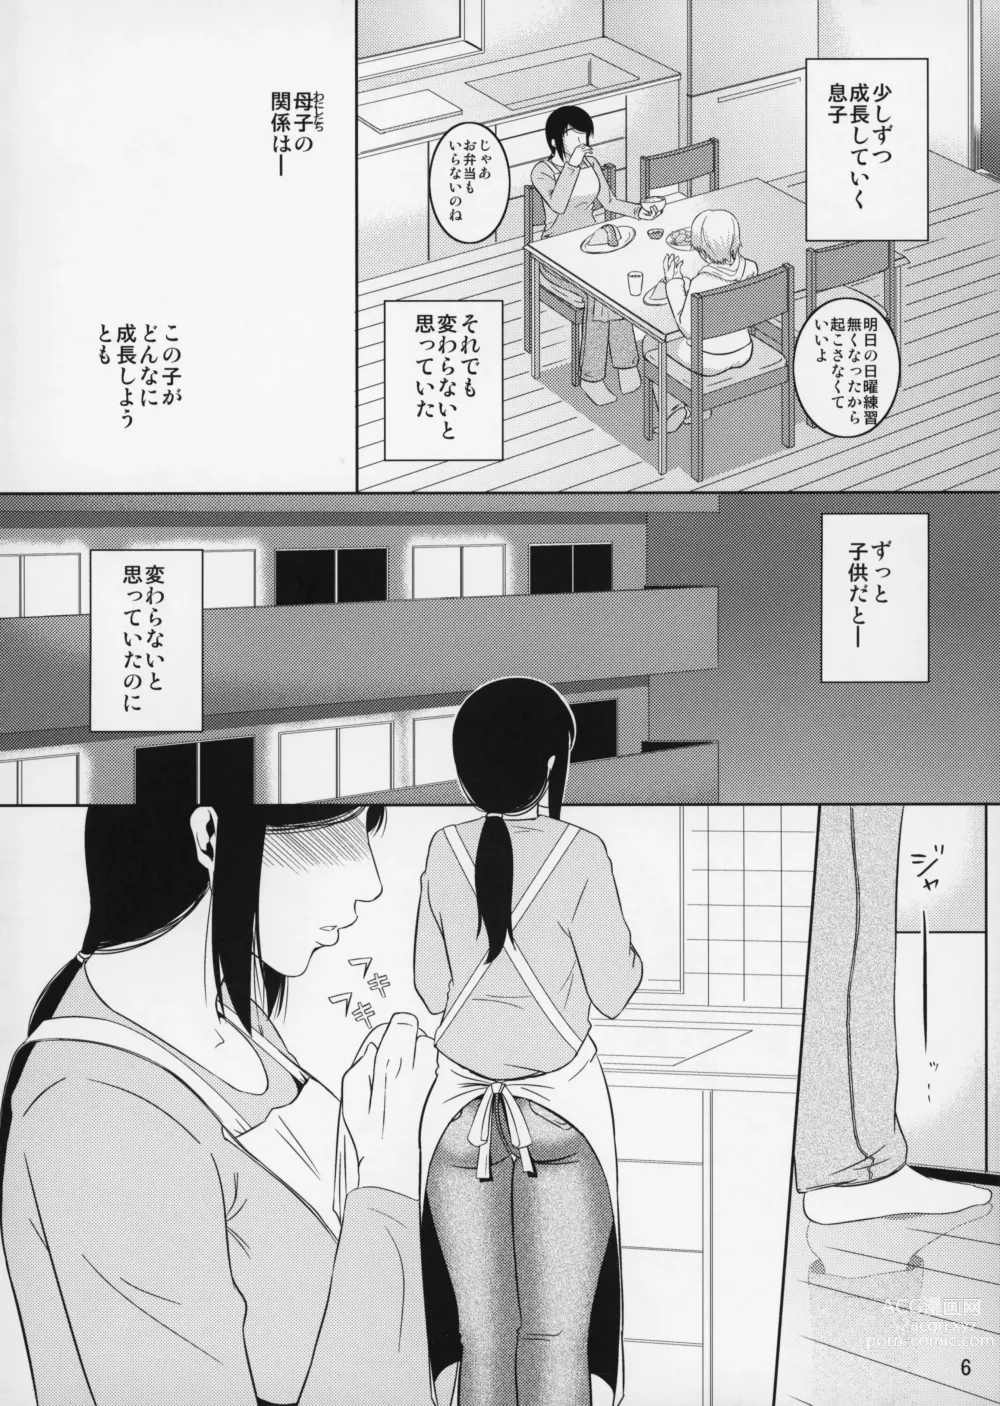 Page 7 of doujinshi Boketsu o Horu 11